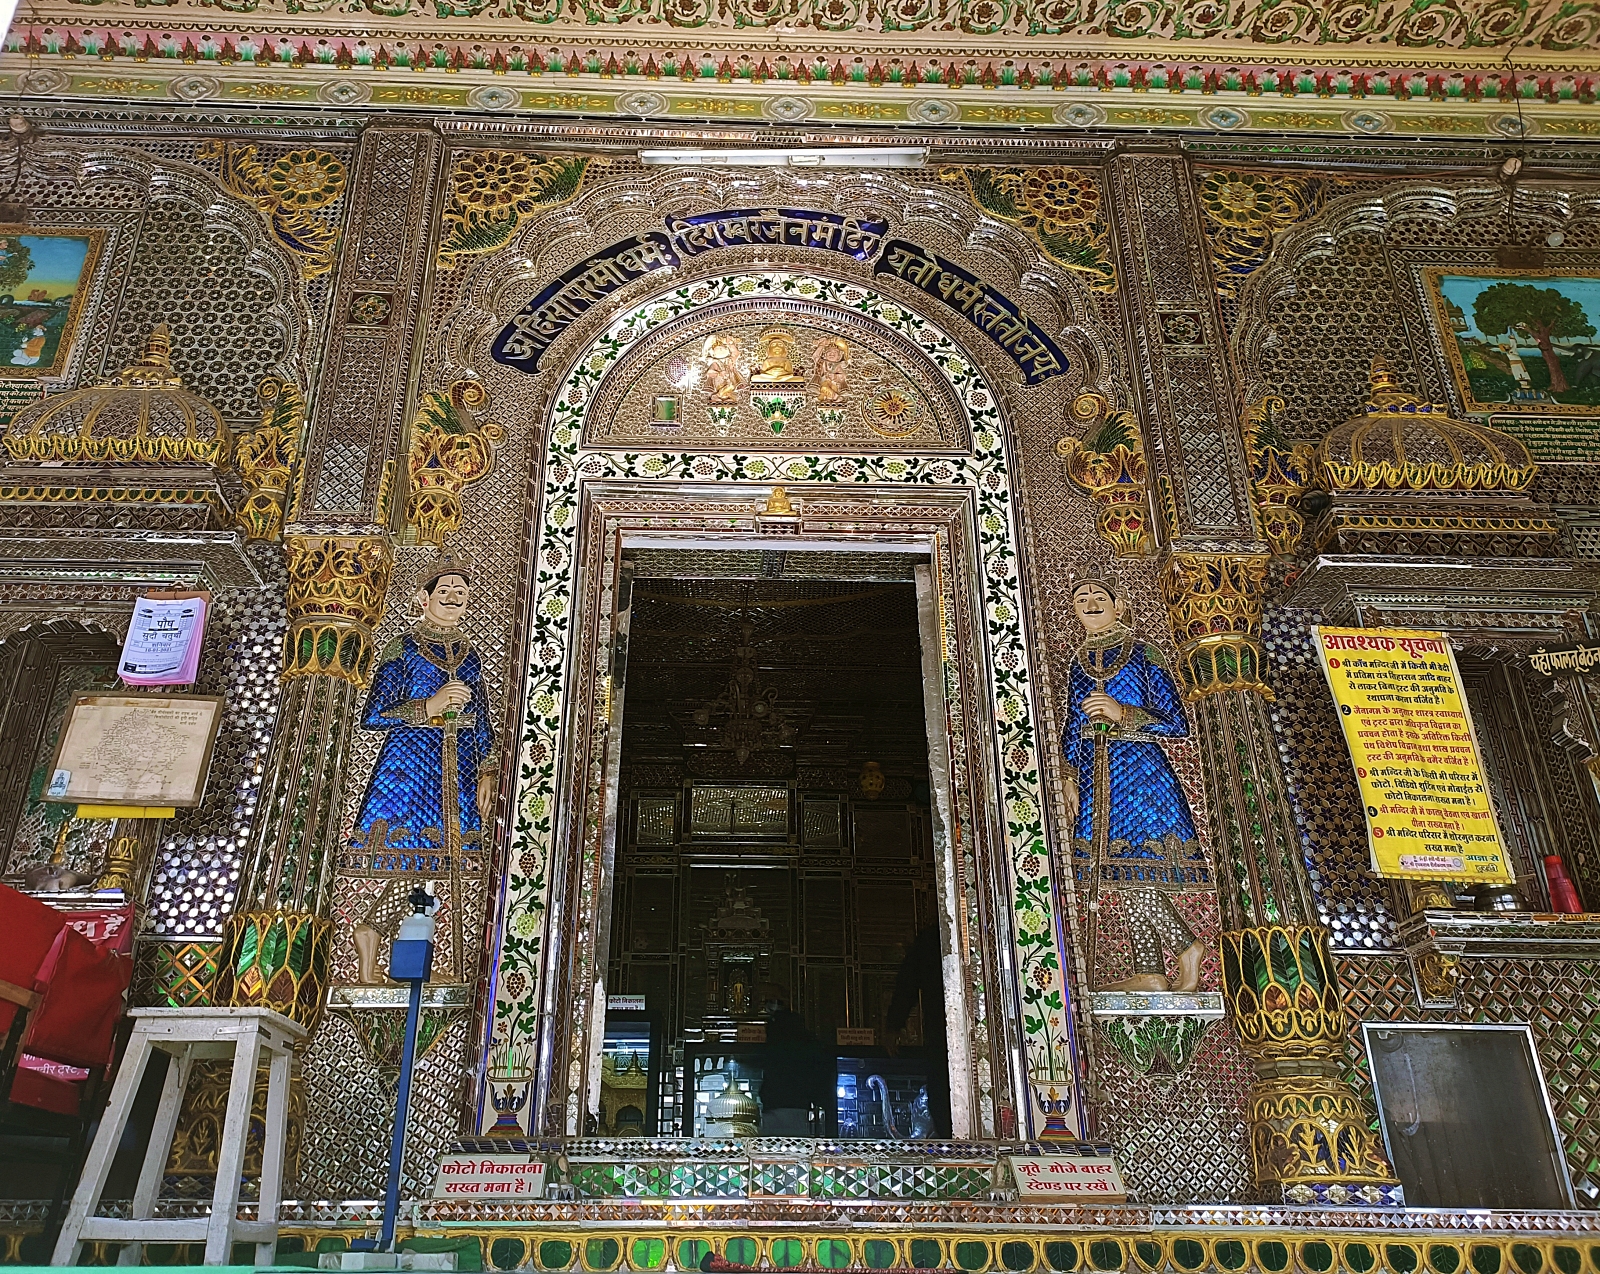 Indore’s Kanch Mandir is a unique glass temple